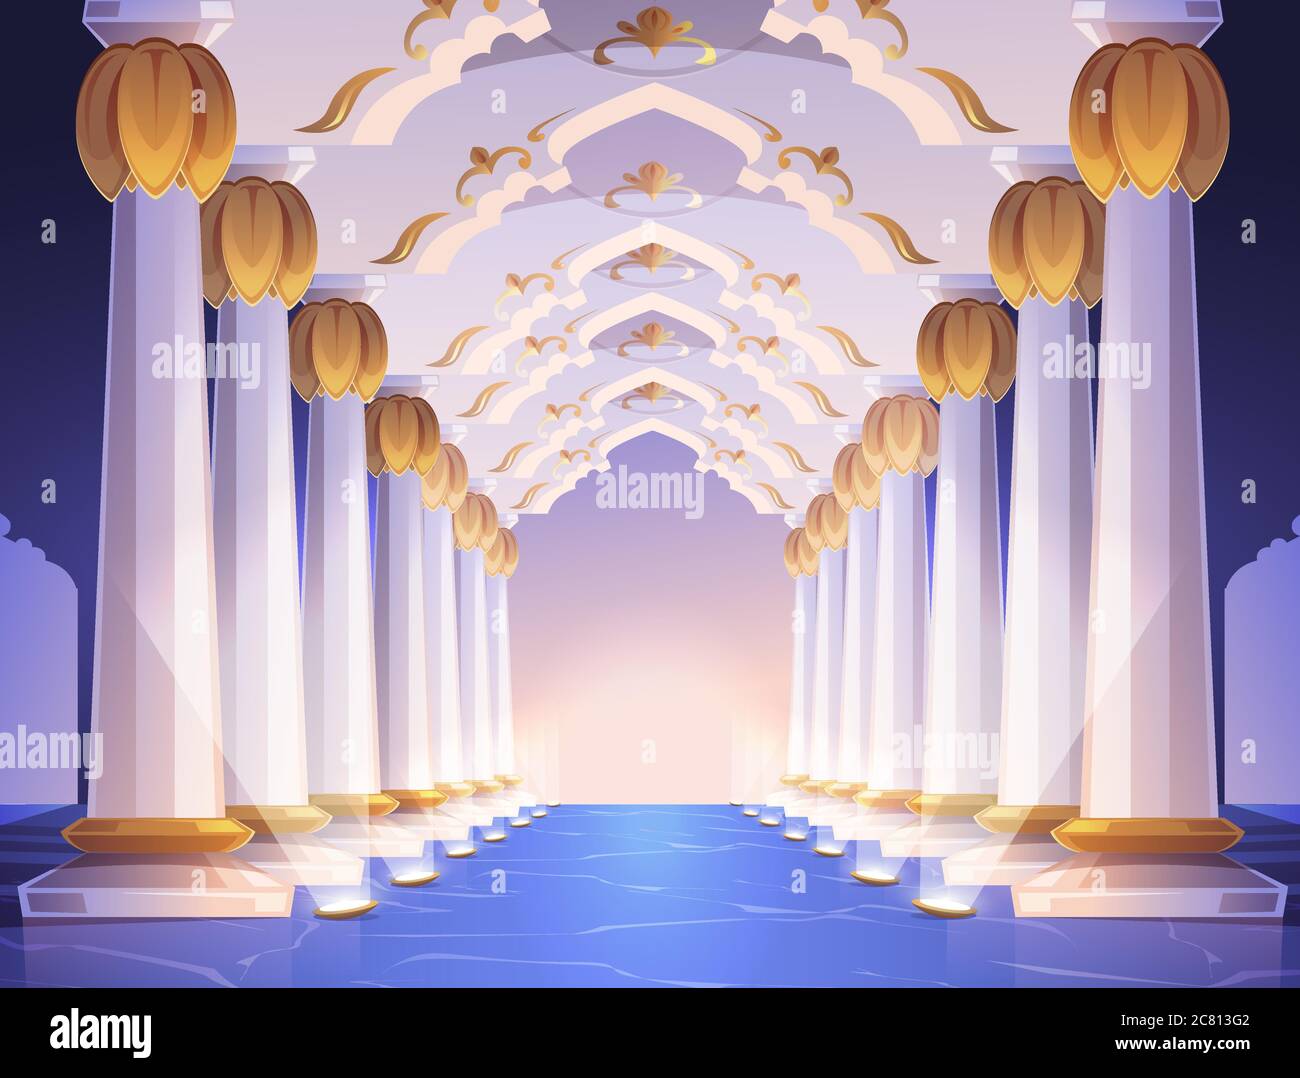 Korridor mit Säulen und Bögen im Palast. Vektor Cartoon Innenraum des Flurs mit weißen Marmorsäulen mit goldenem Ornament. Leere Galerie mit barocker Kolonnade, die von Bodenstrahlern beleuchtet wird Stock Vektor